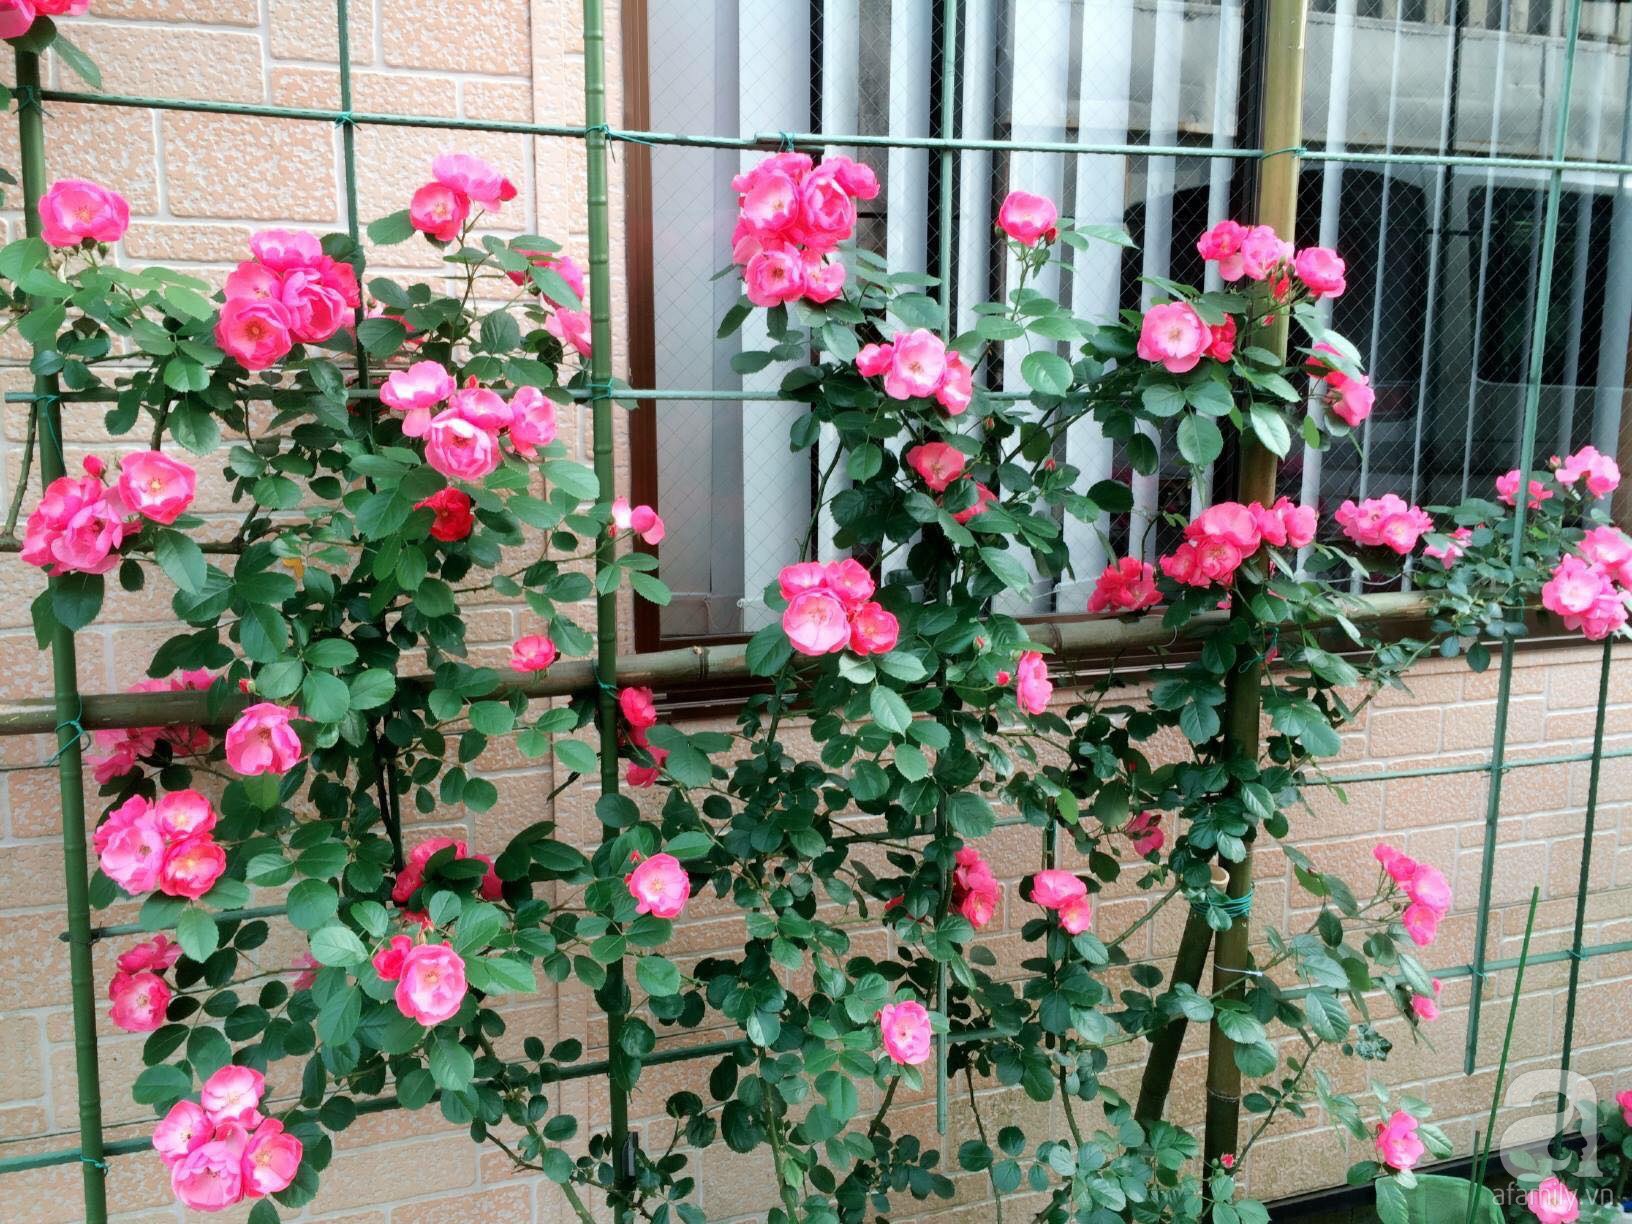 Bức tường hoa hồng đẹp như mơ trong sân vườn vỏn vẹn 6m² của người phụ nữ bỏ ra 5 năm miệt mài chăm sóc - Ảnh 4.